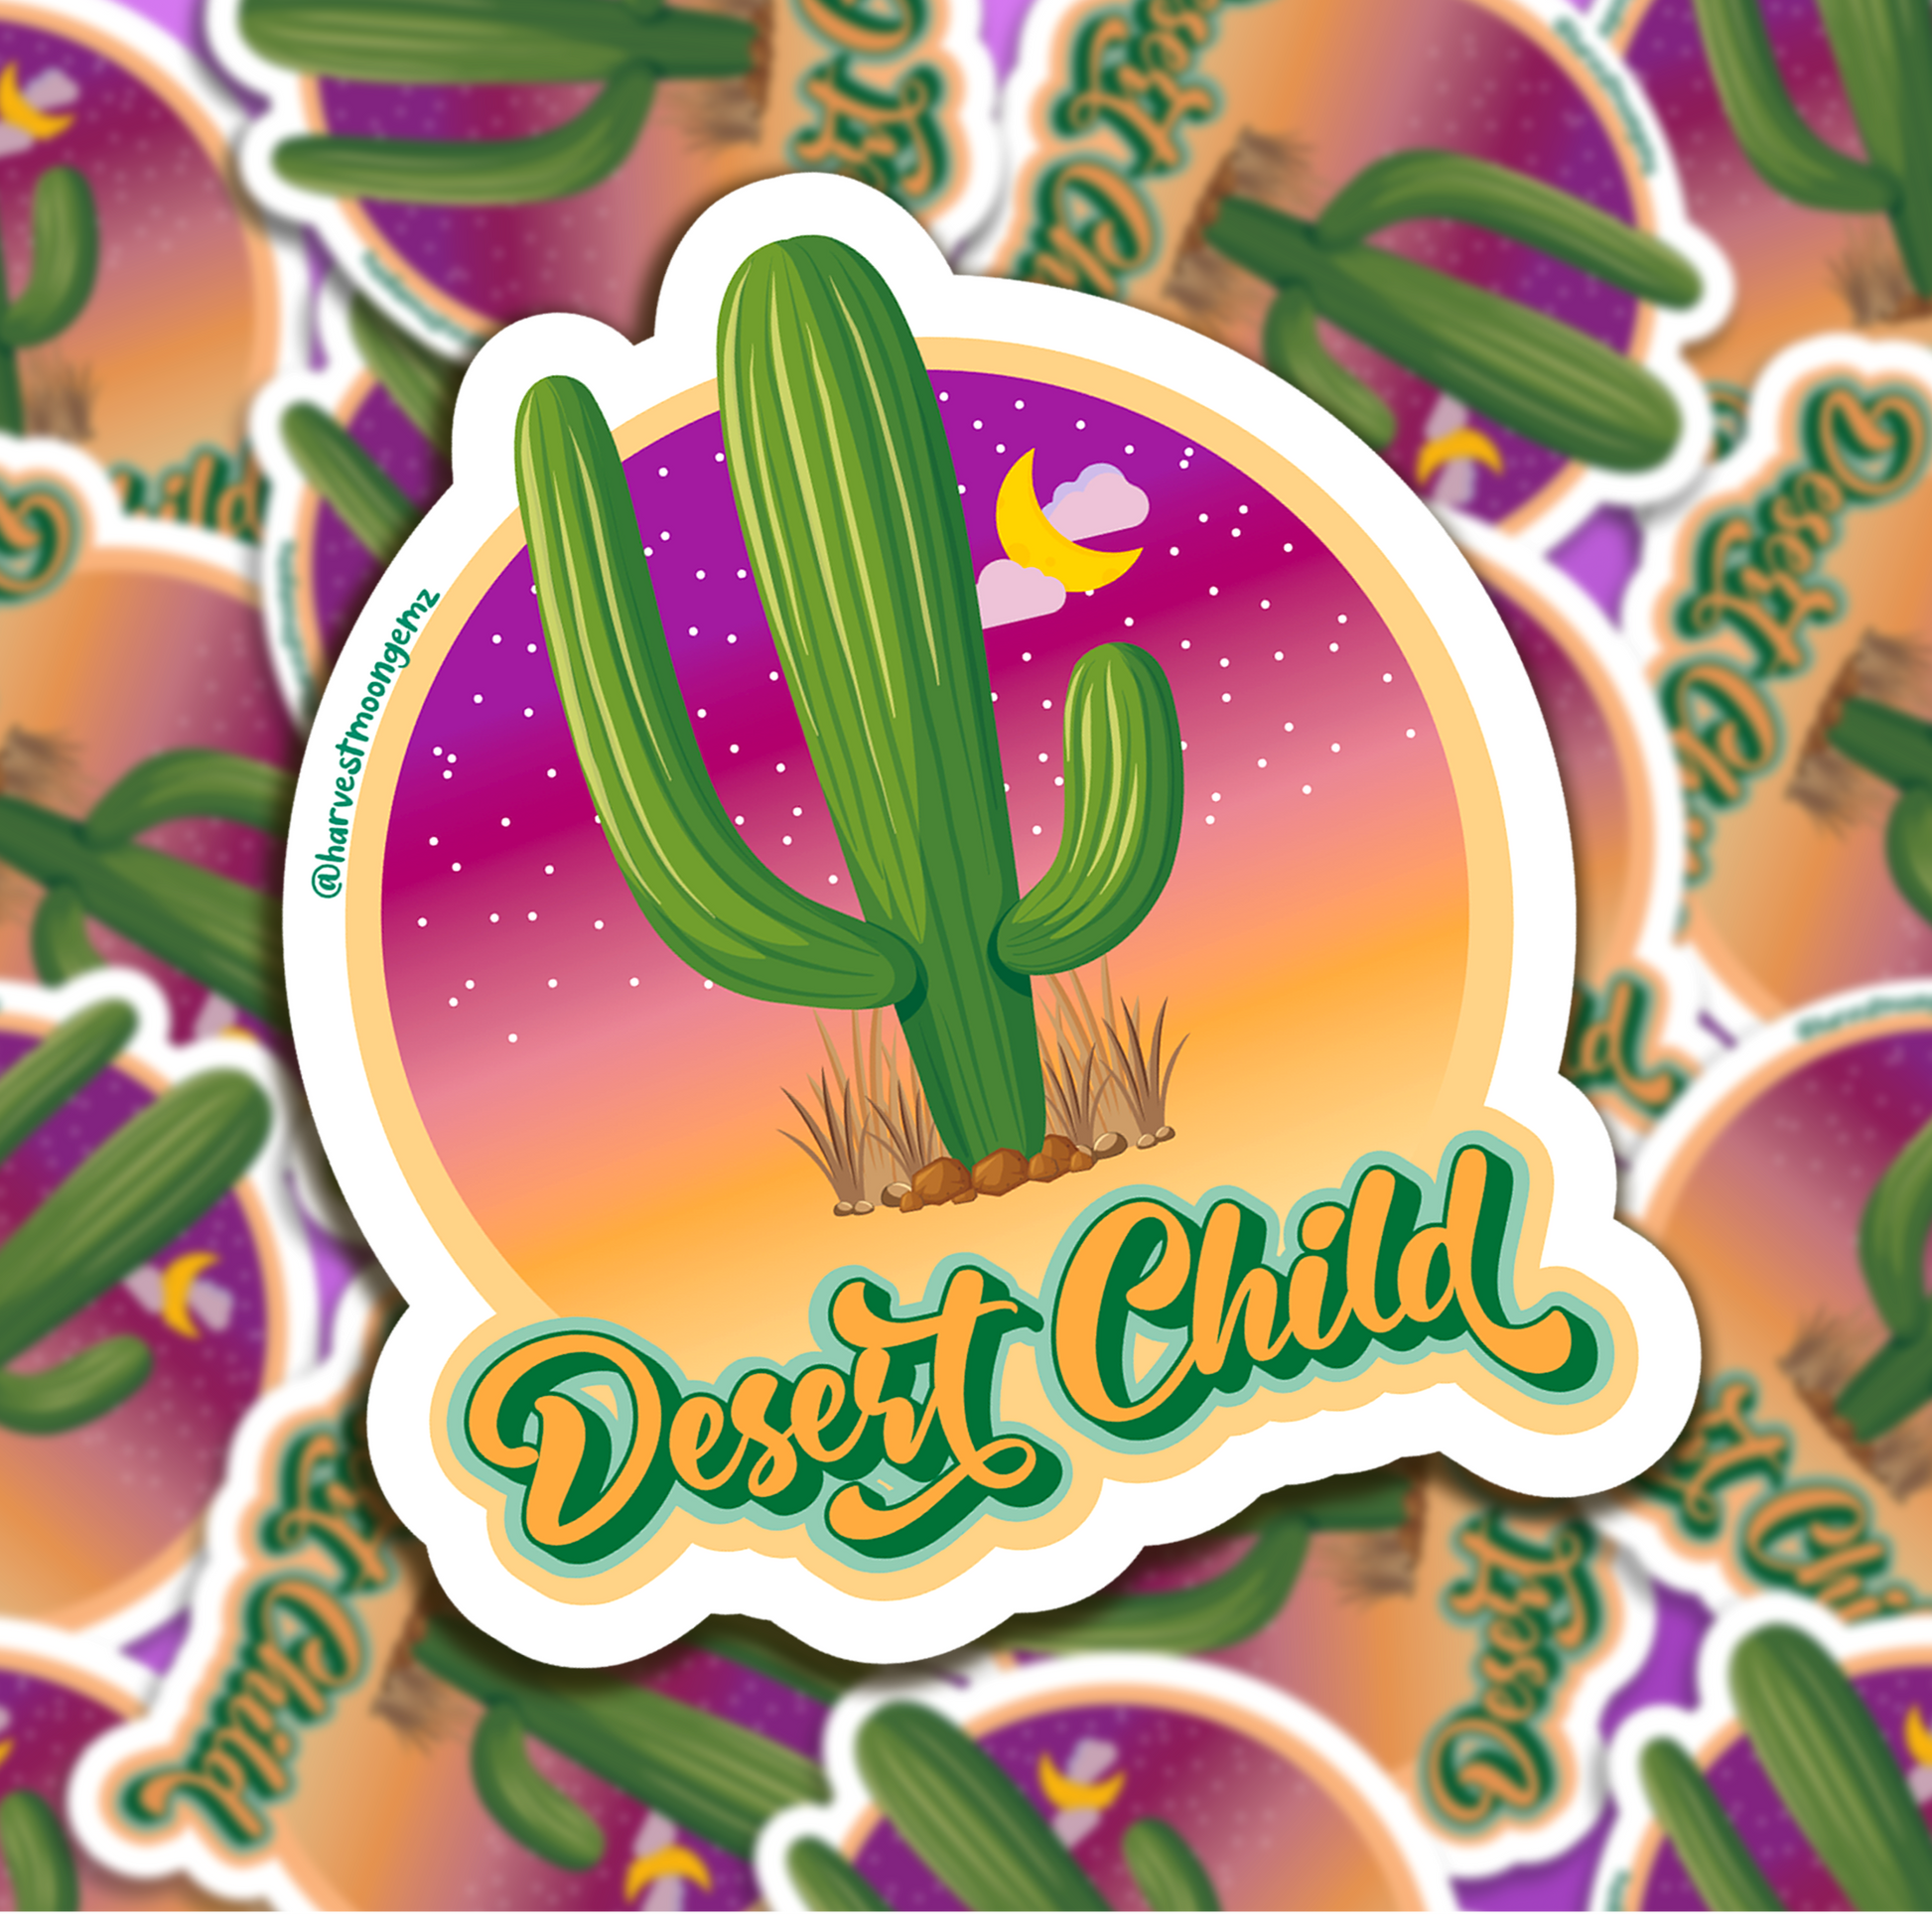 Desert Child Sticker Harvest Moon Gemz